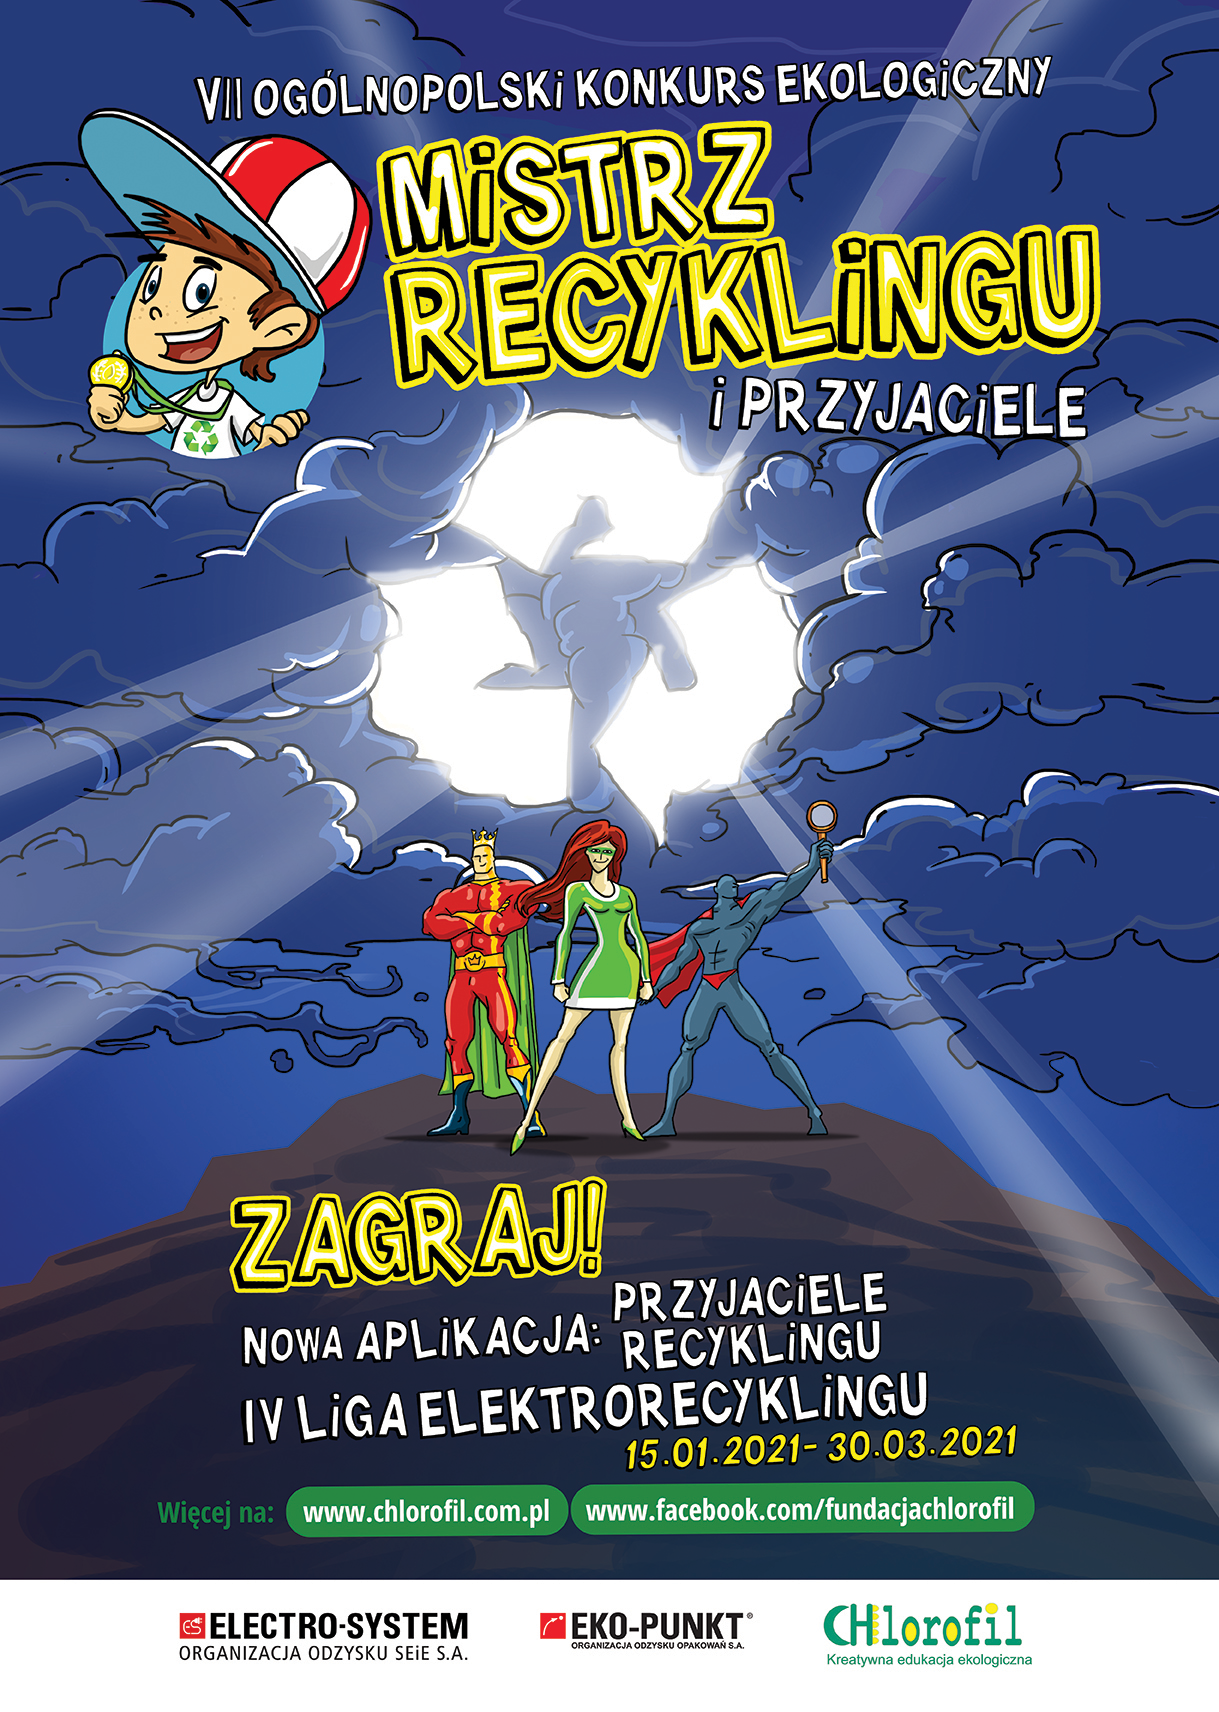 Plakat promujący akcję Mistrz recyklingu trwającego od 15 stycznia do 30 marca 2021